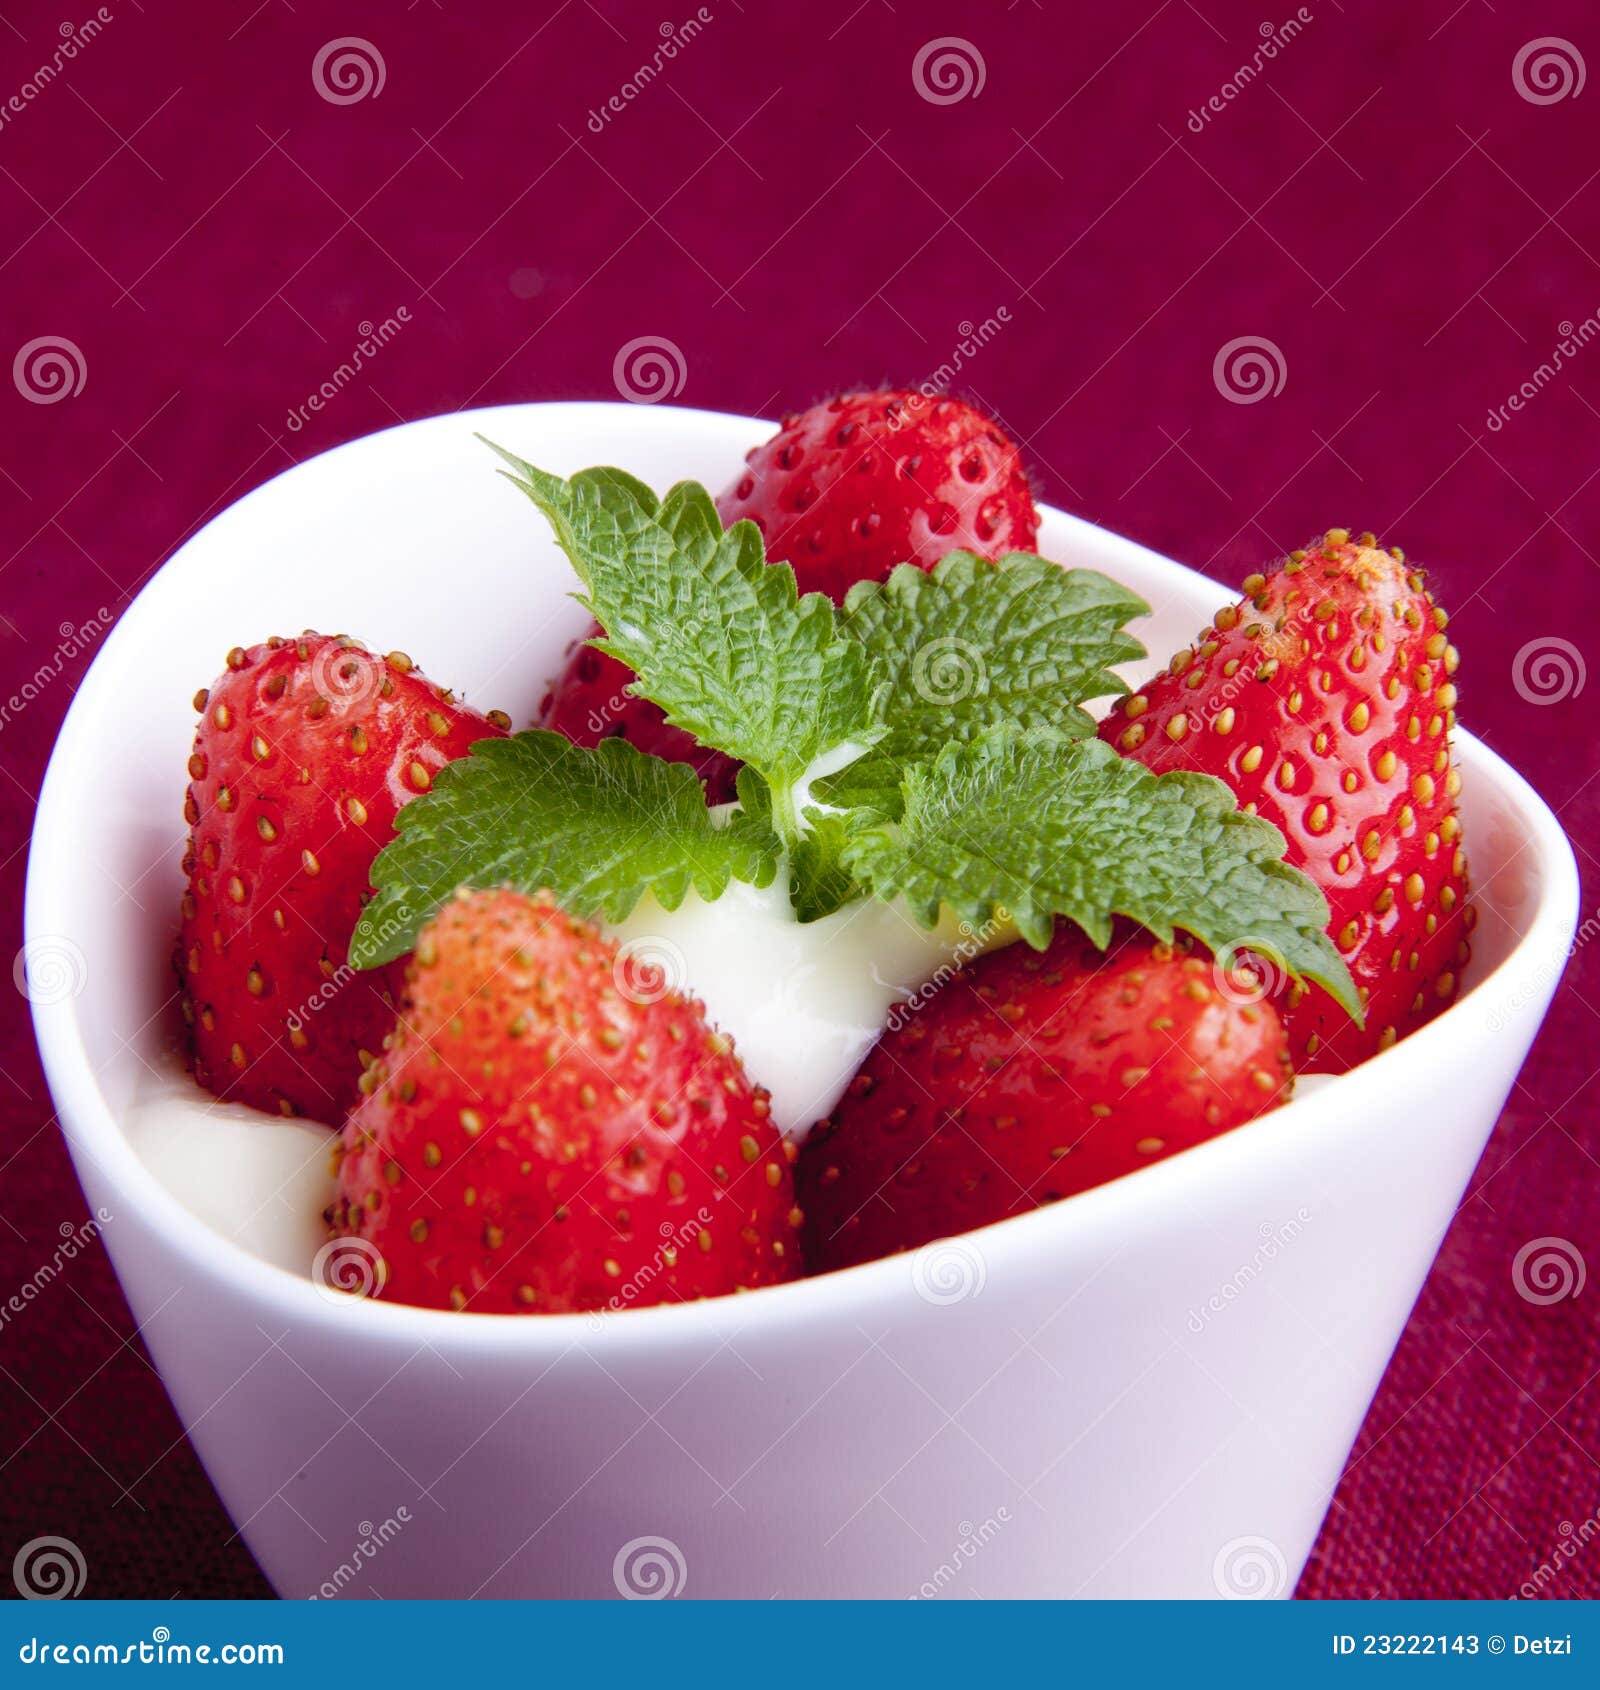 Erdbeer Zitrone Fruchtgummis — Rezepte Suchen